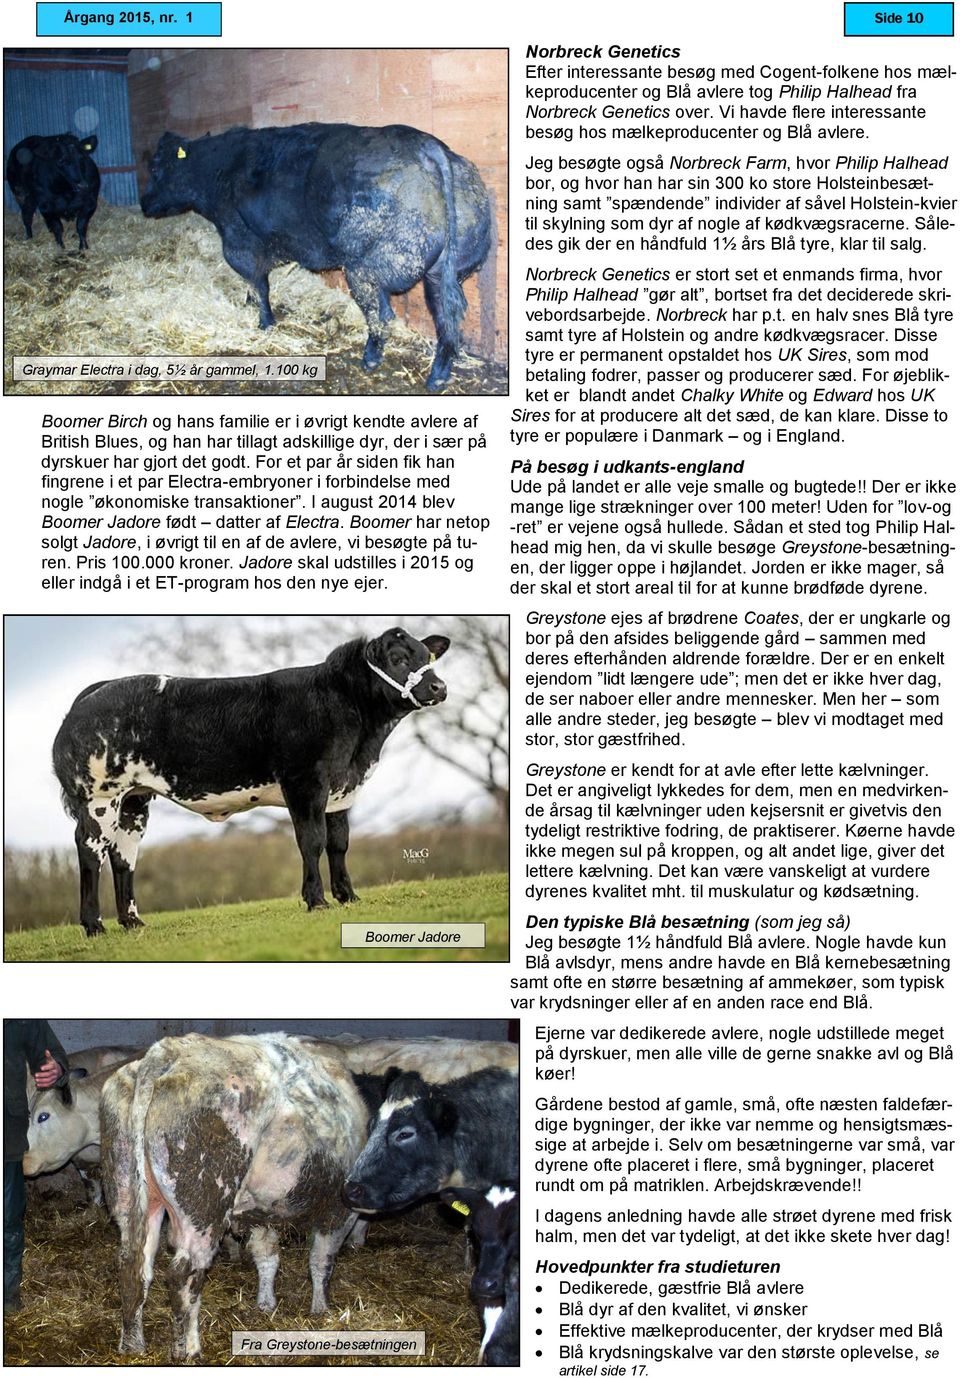 Jeg besøgte også Norbreck Farm, hvor Philip Halhead bor, og hvor han har sin 300 ko store Holsteinbesætning samt spændende individer af såvel Holstein-kvier til skylning som dyr af nogle af